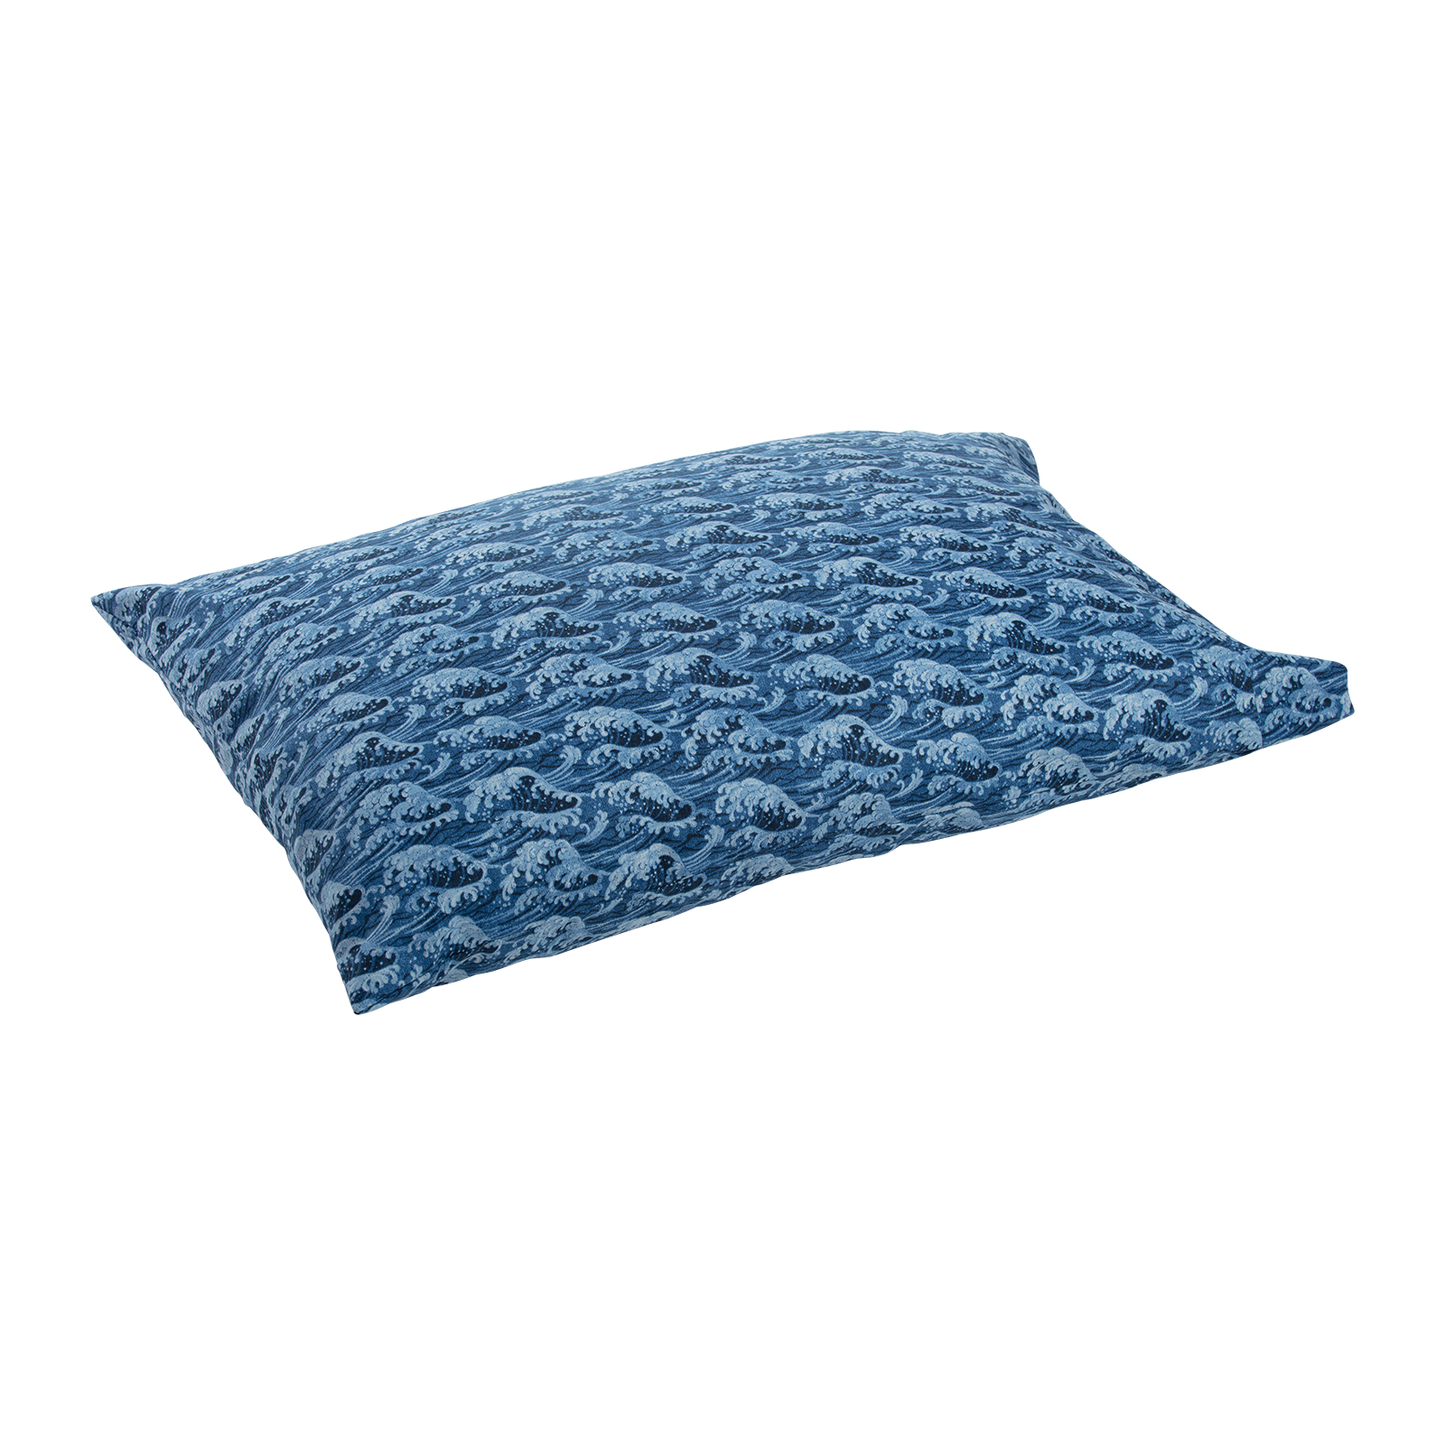 J-Life Tidal Wave Blue Pillowcase_Pillows & Shams